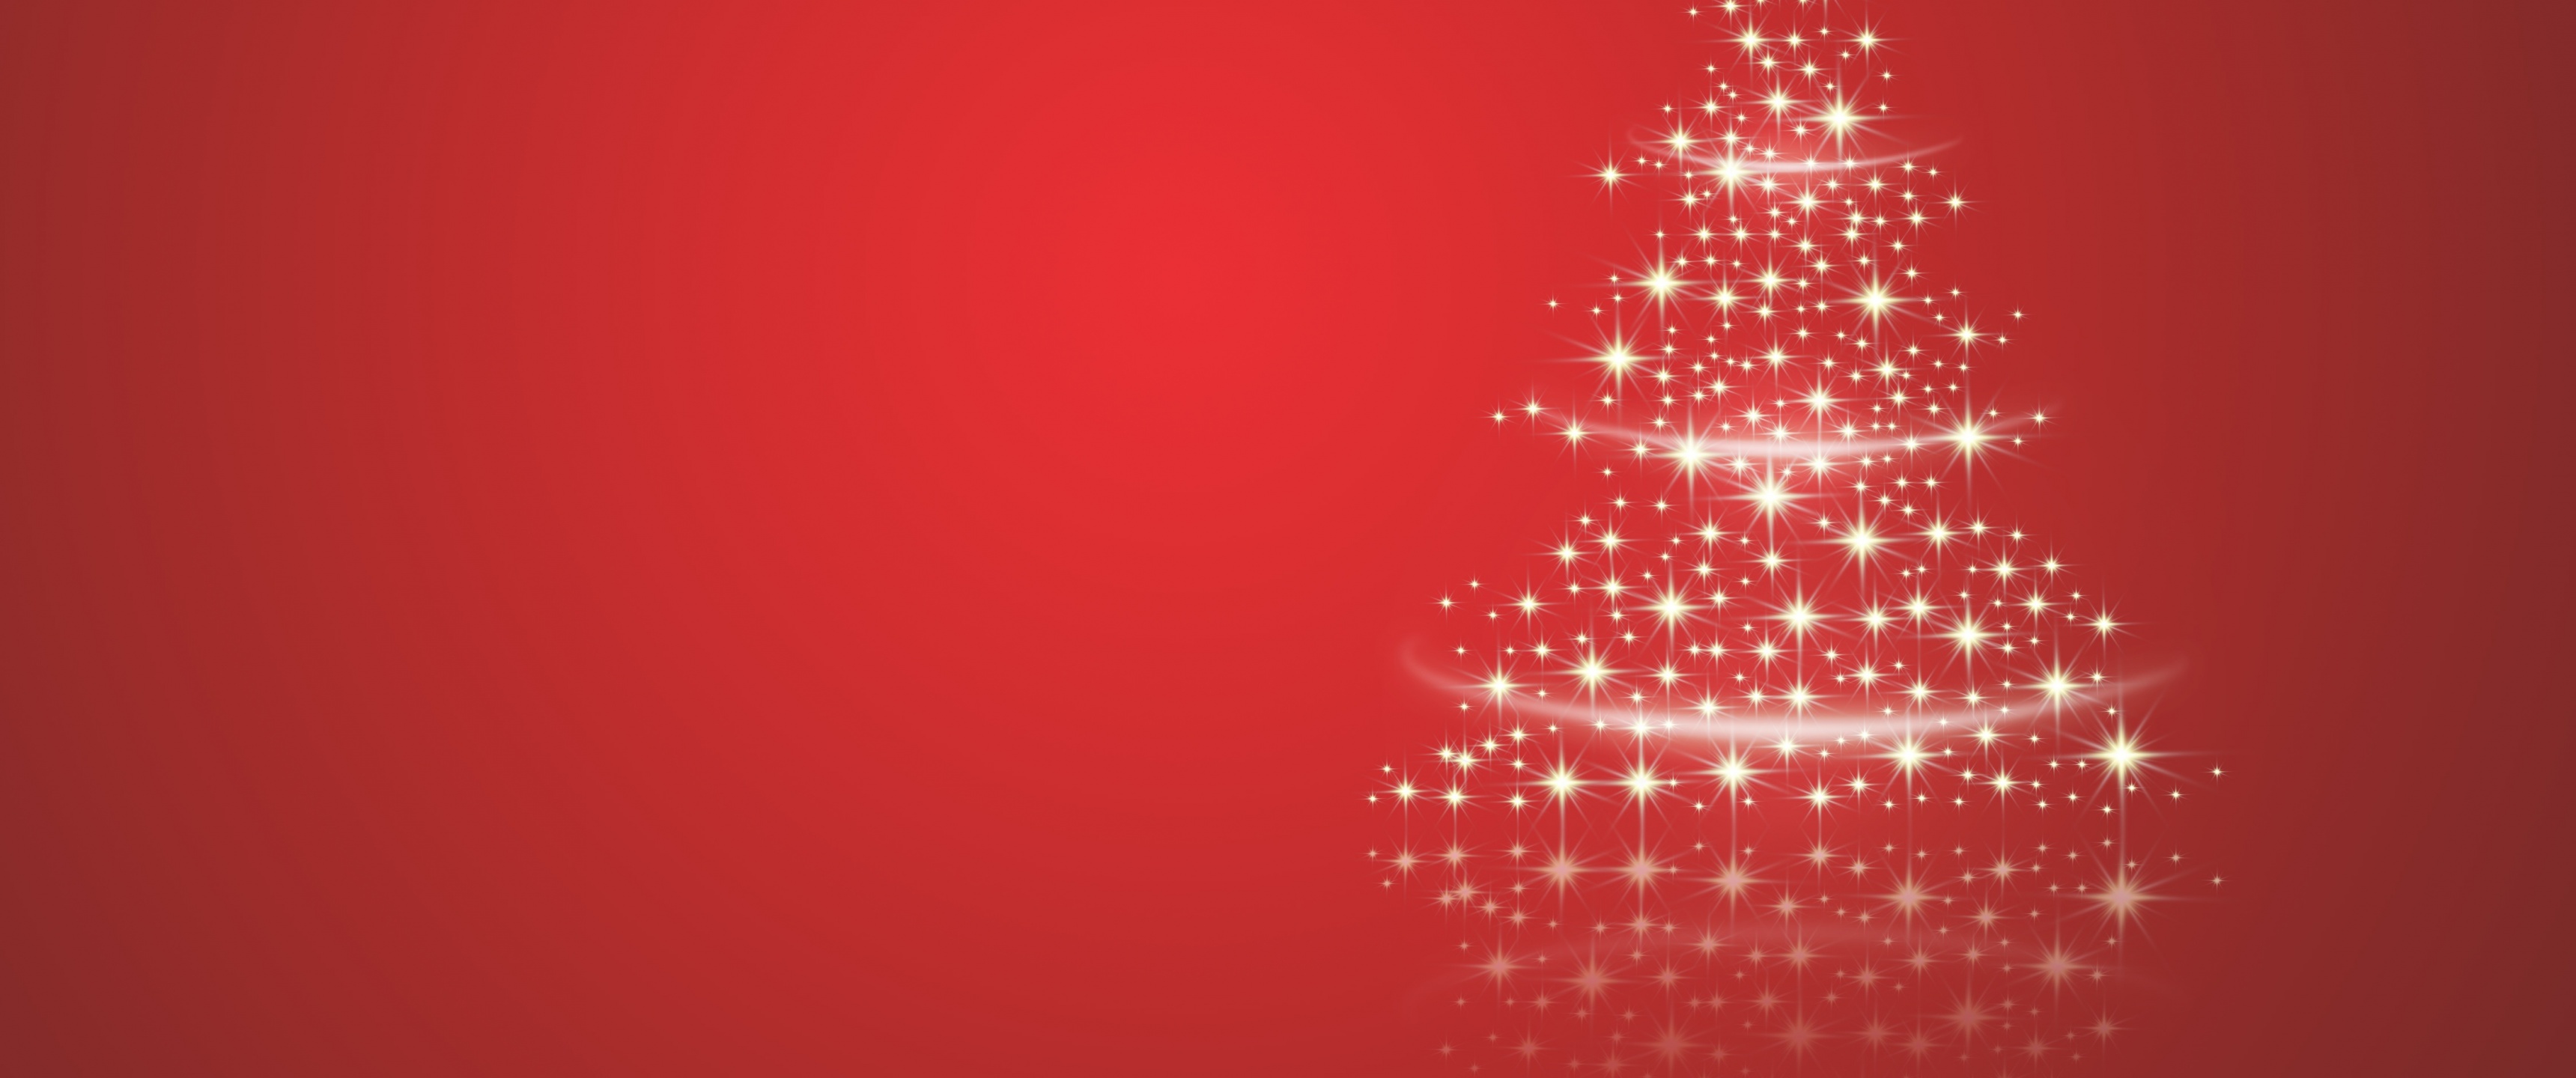 Với màu đỏ Giáng Sinh quen thuộc và độ phân giải 4K, hình nền cây thông này sẽ đem đến không gian Giáng Sinh trong nhà của bạn. Hãy cảm nhận sự ấm áp và những giây phút đong đầy cảm xúc khi ngắm nhìn hình ảnh này.